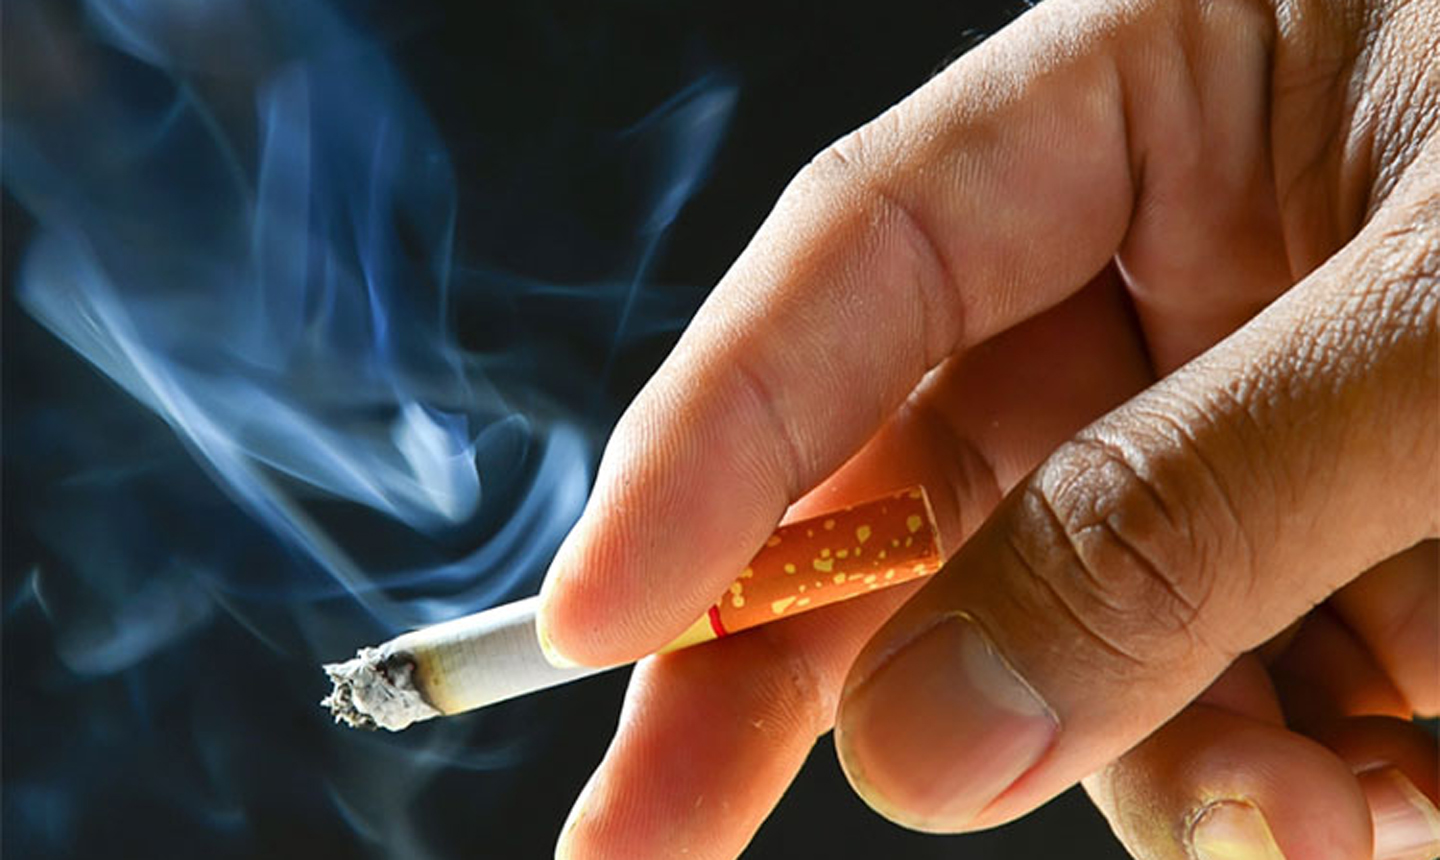   Hút thuốc lá là nguyên nhân hàng đầu gây bệnh tiểu đường và tim mạch  